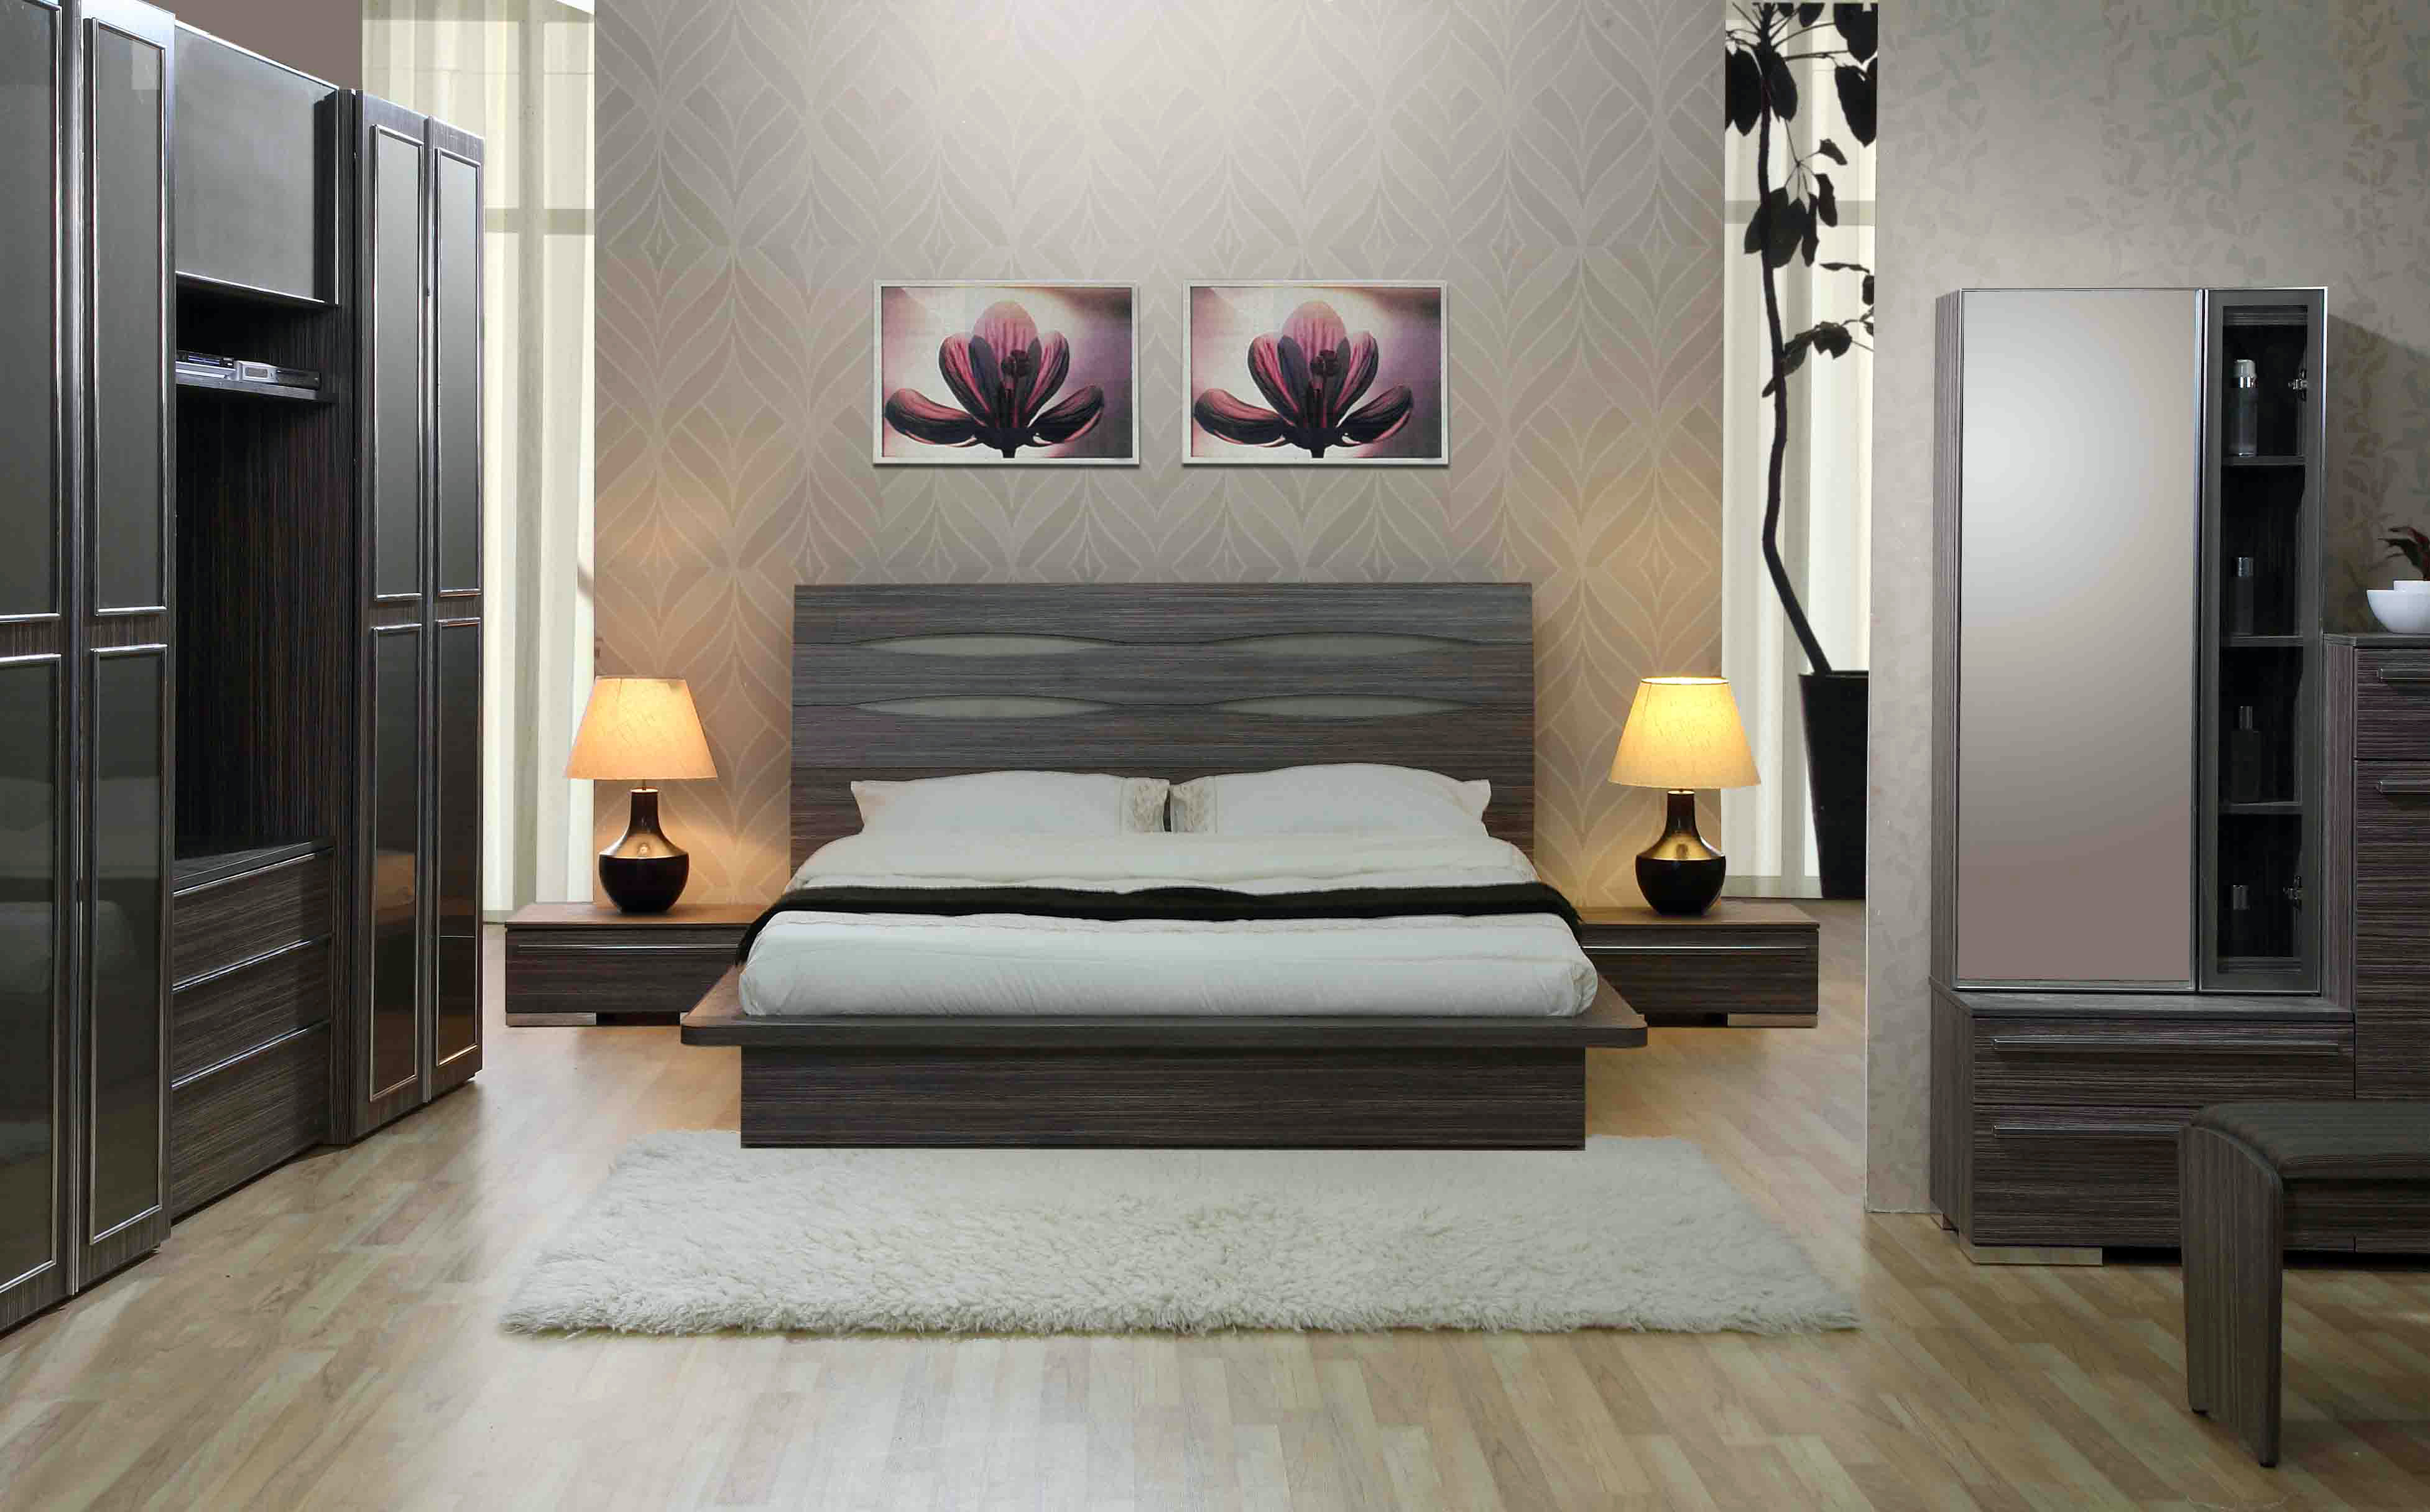 25 Best Bedroom Designs Ideas